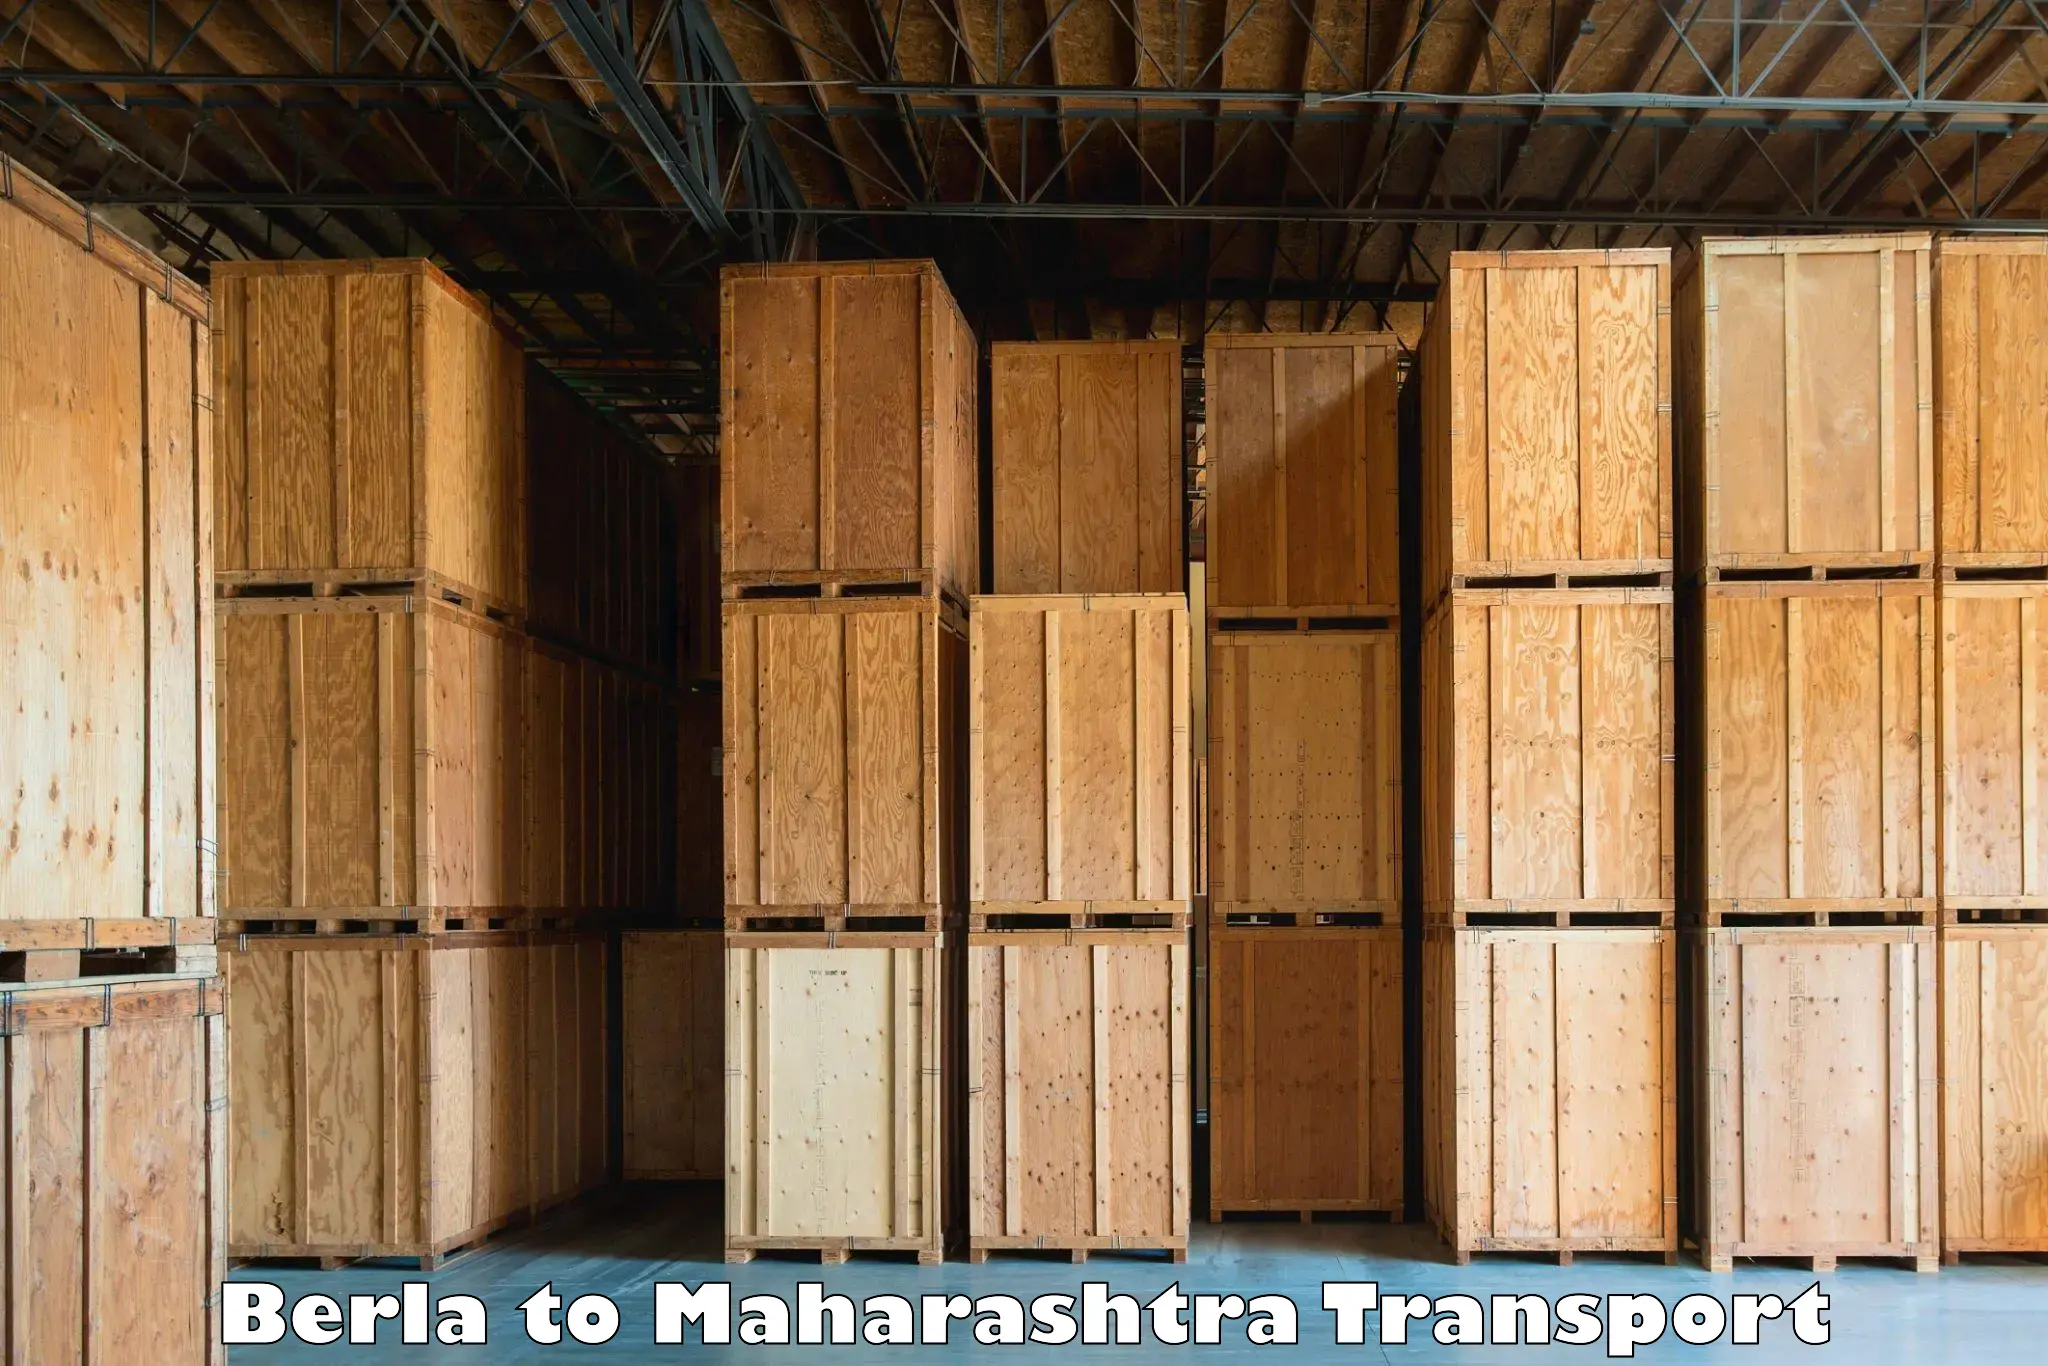 All India transport service Berla to Maharashtra